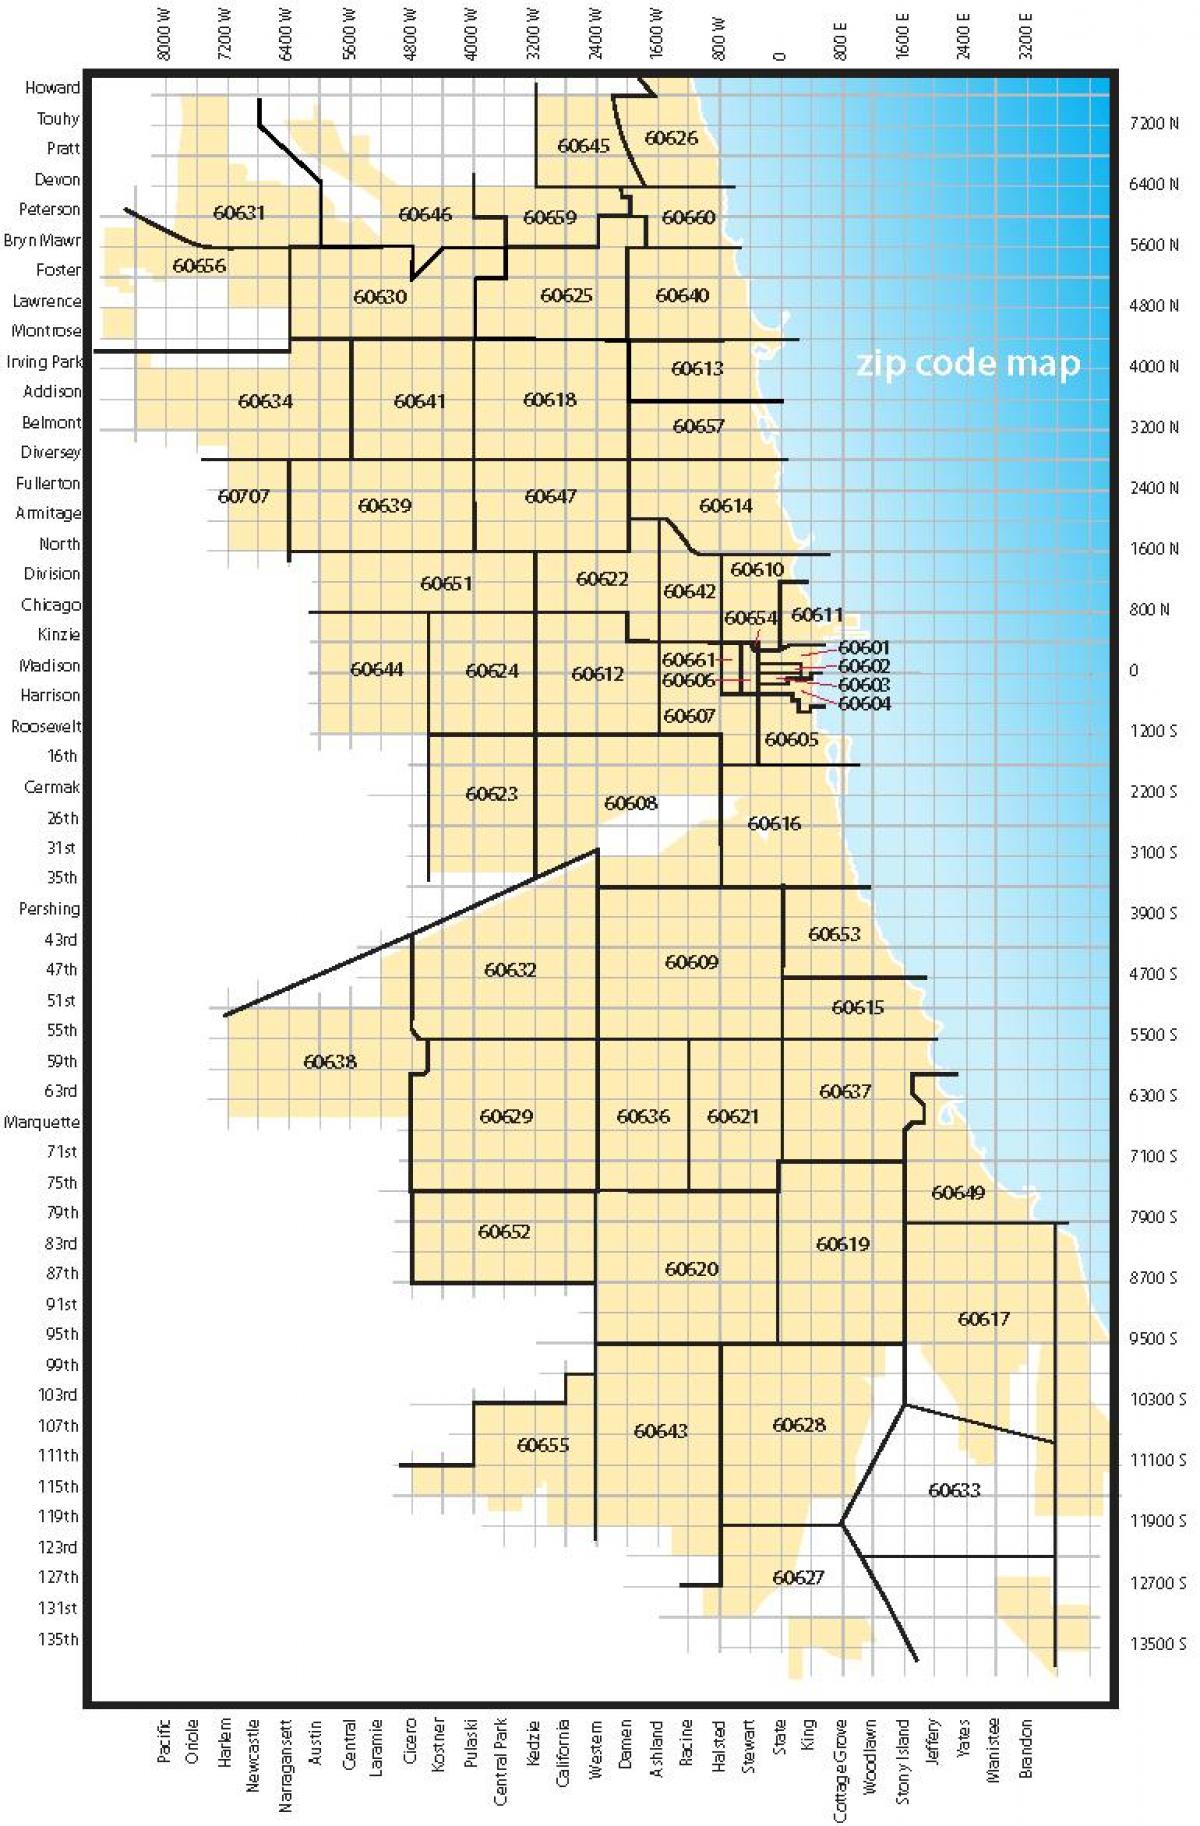 Chicago pozivni broj mapu